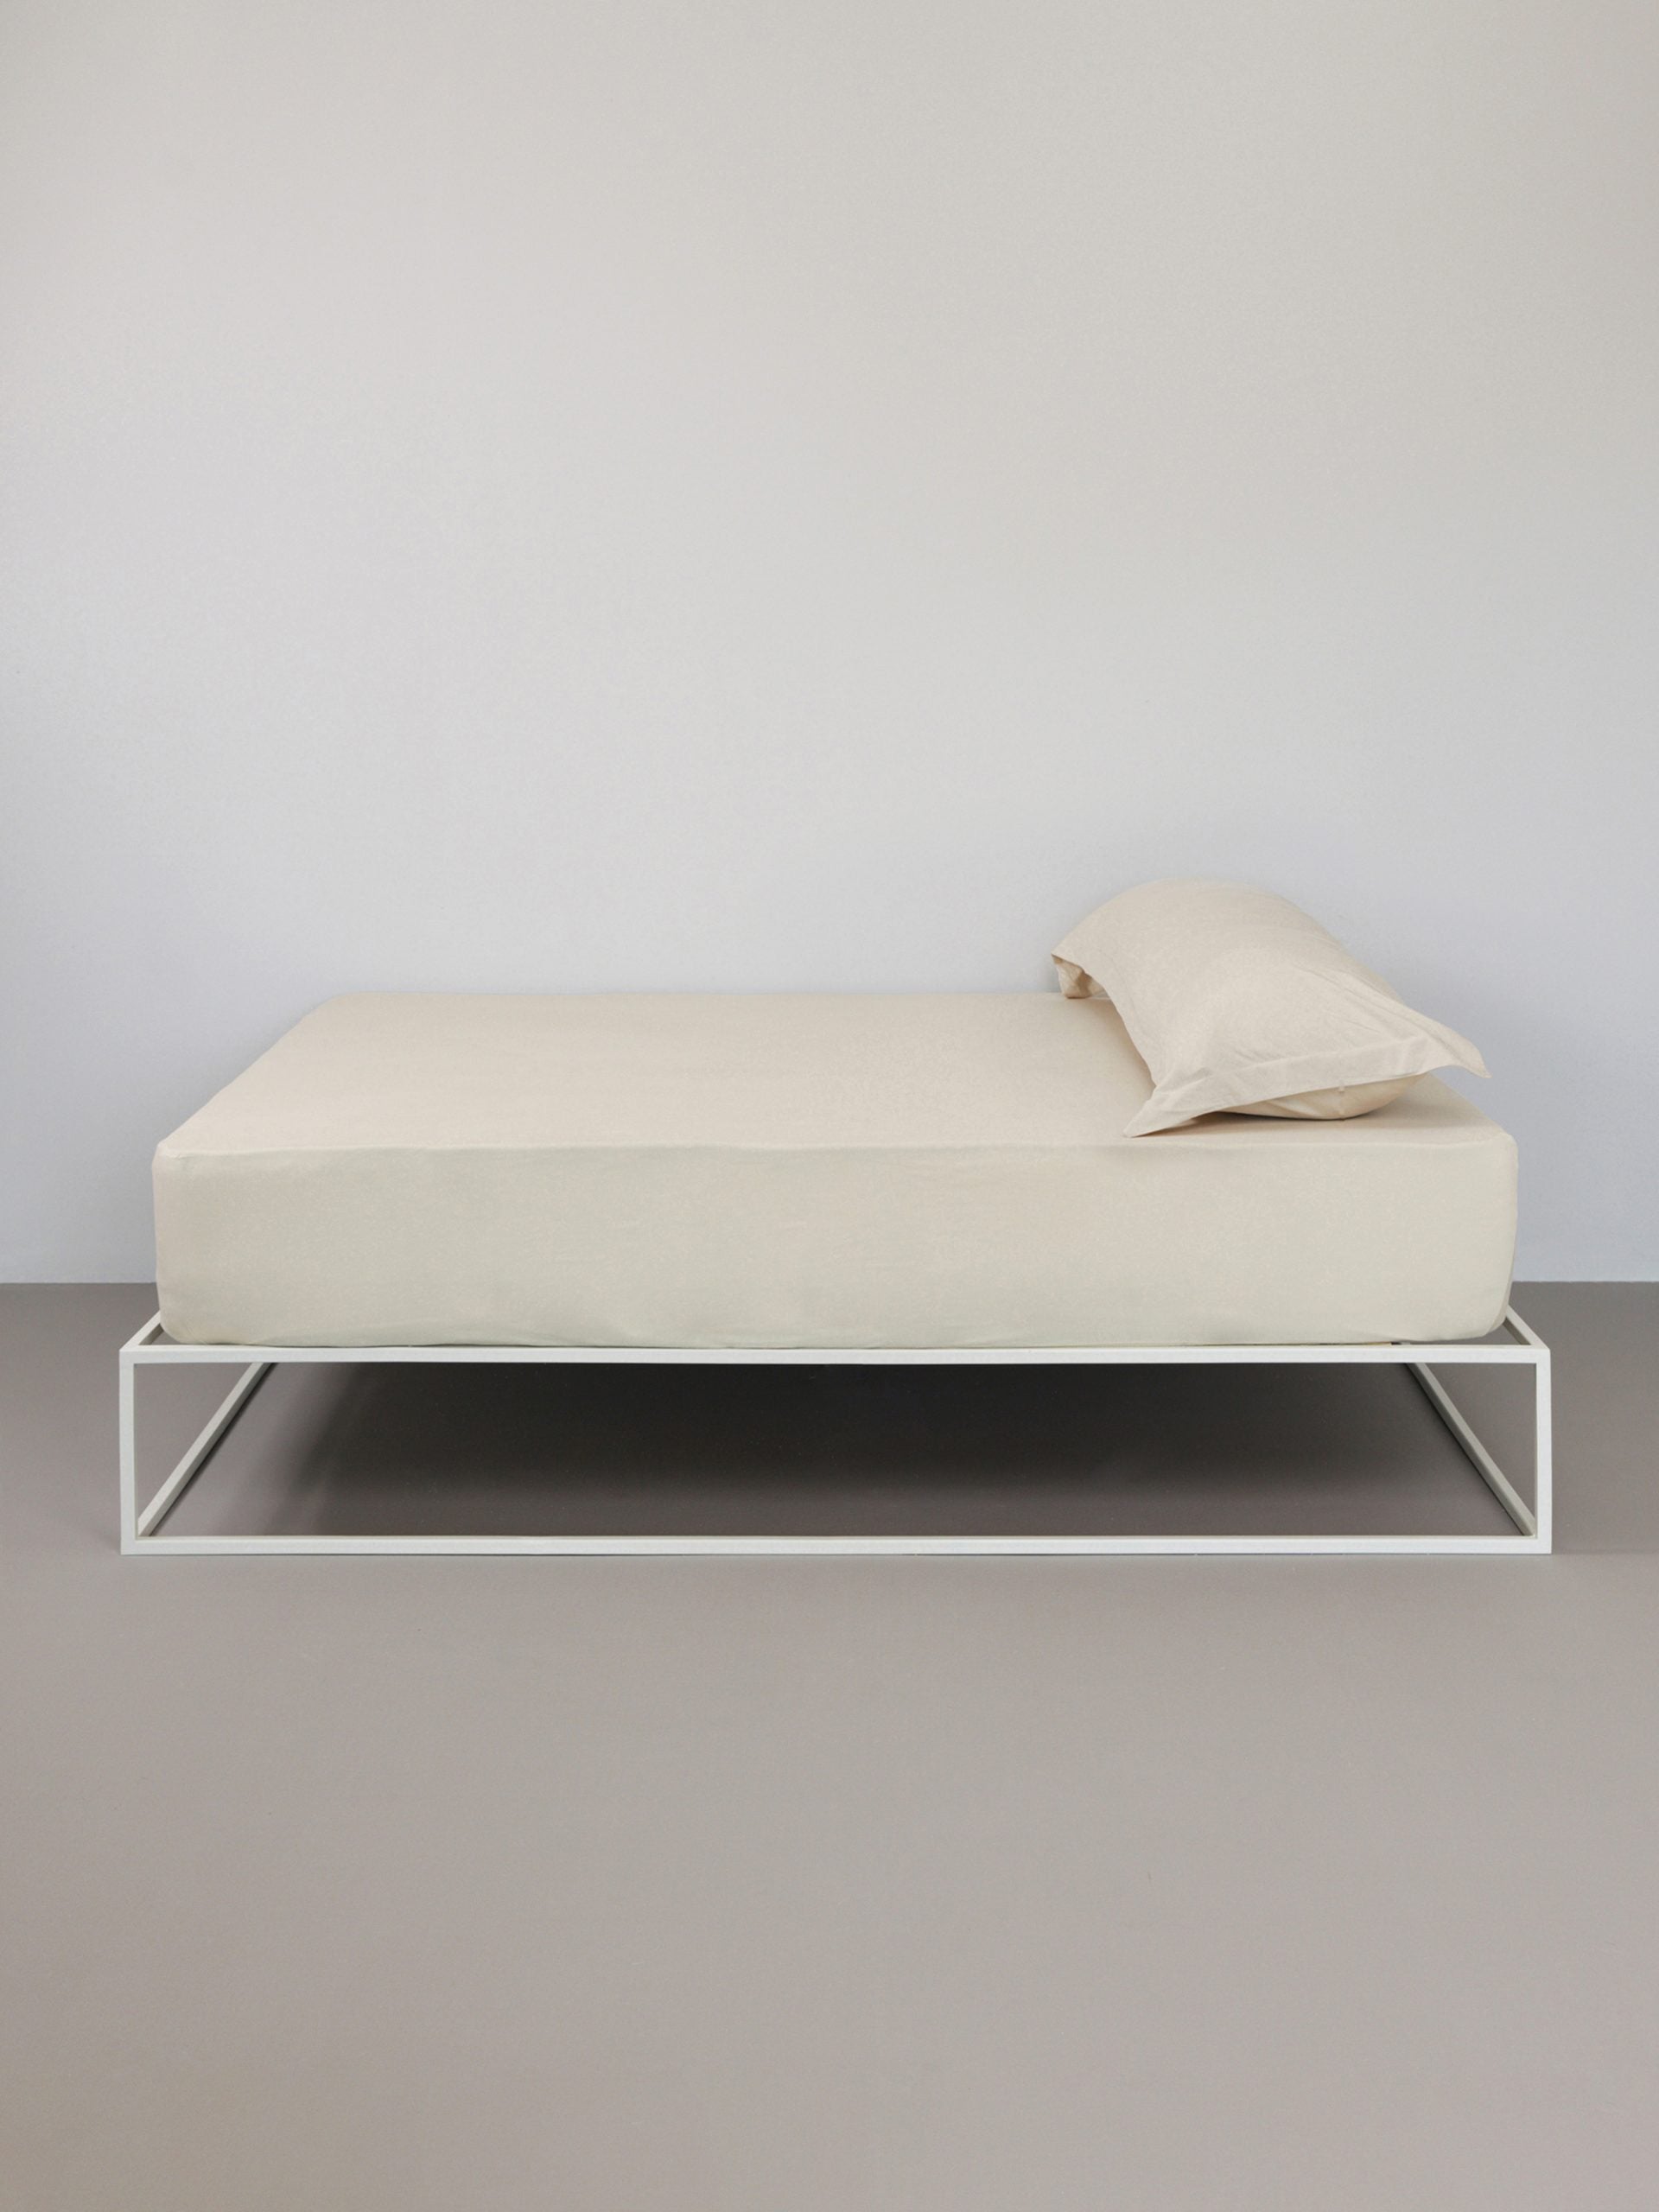 מיטת ברזל לבנה עם סדין, כרית וציפית לכרית ארוכה בצבע אבן בחדר עם קירות אפורים